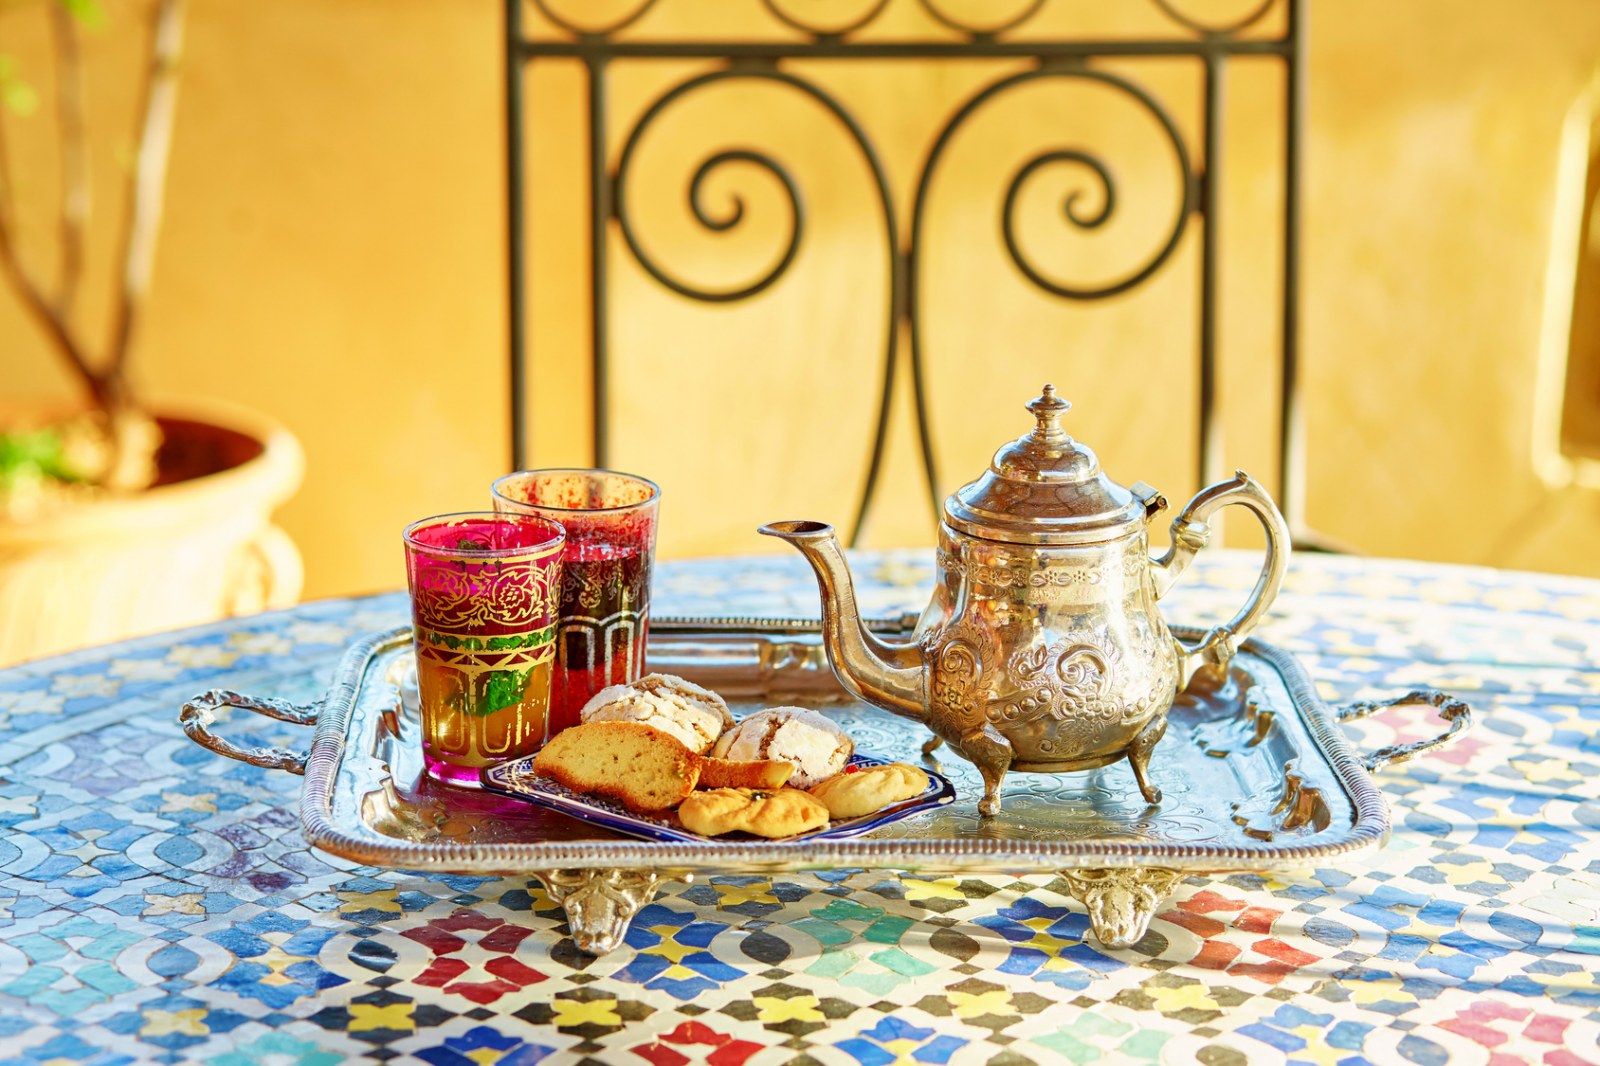  Marrakech, Morocco, Africa, Pixabay.com